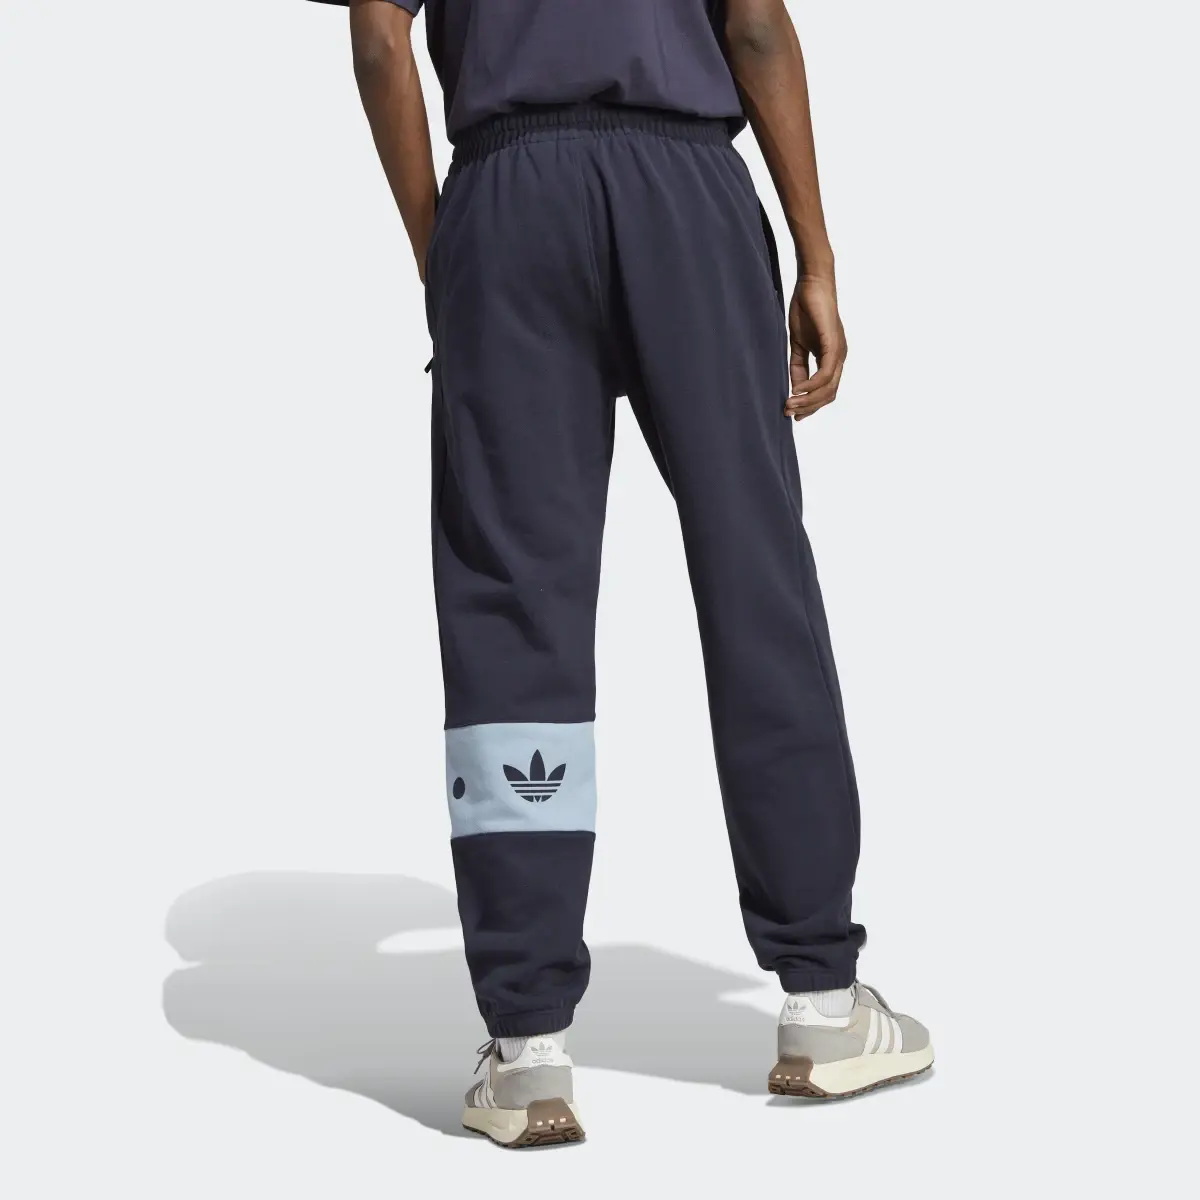 Adidas RIFTA City Boy Sweat Pants. 3